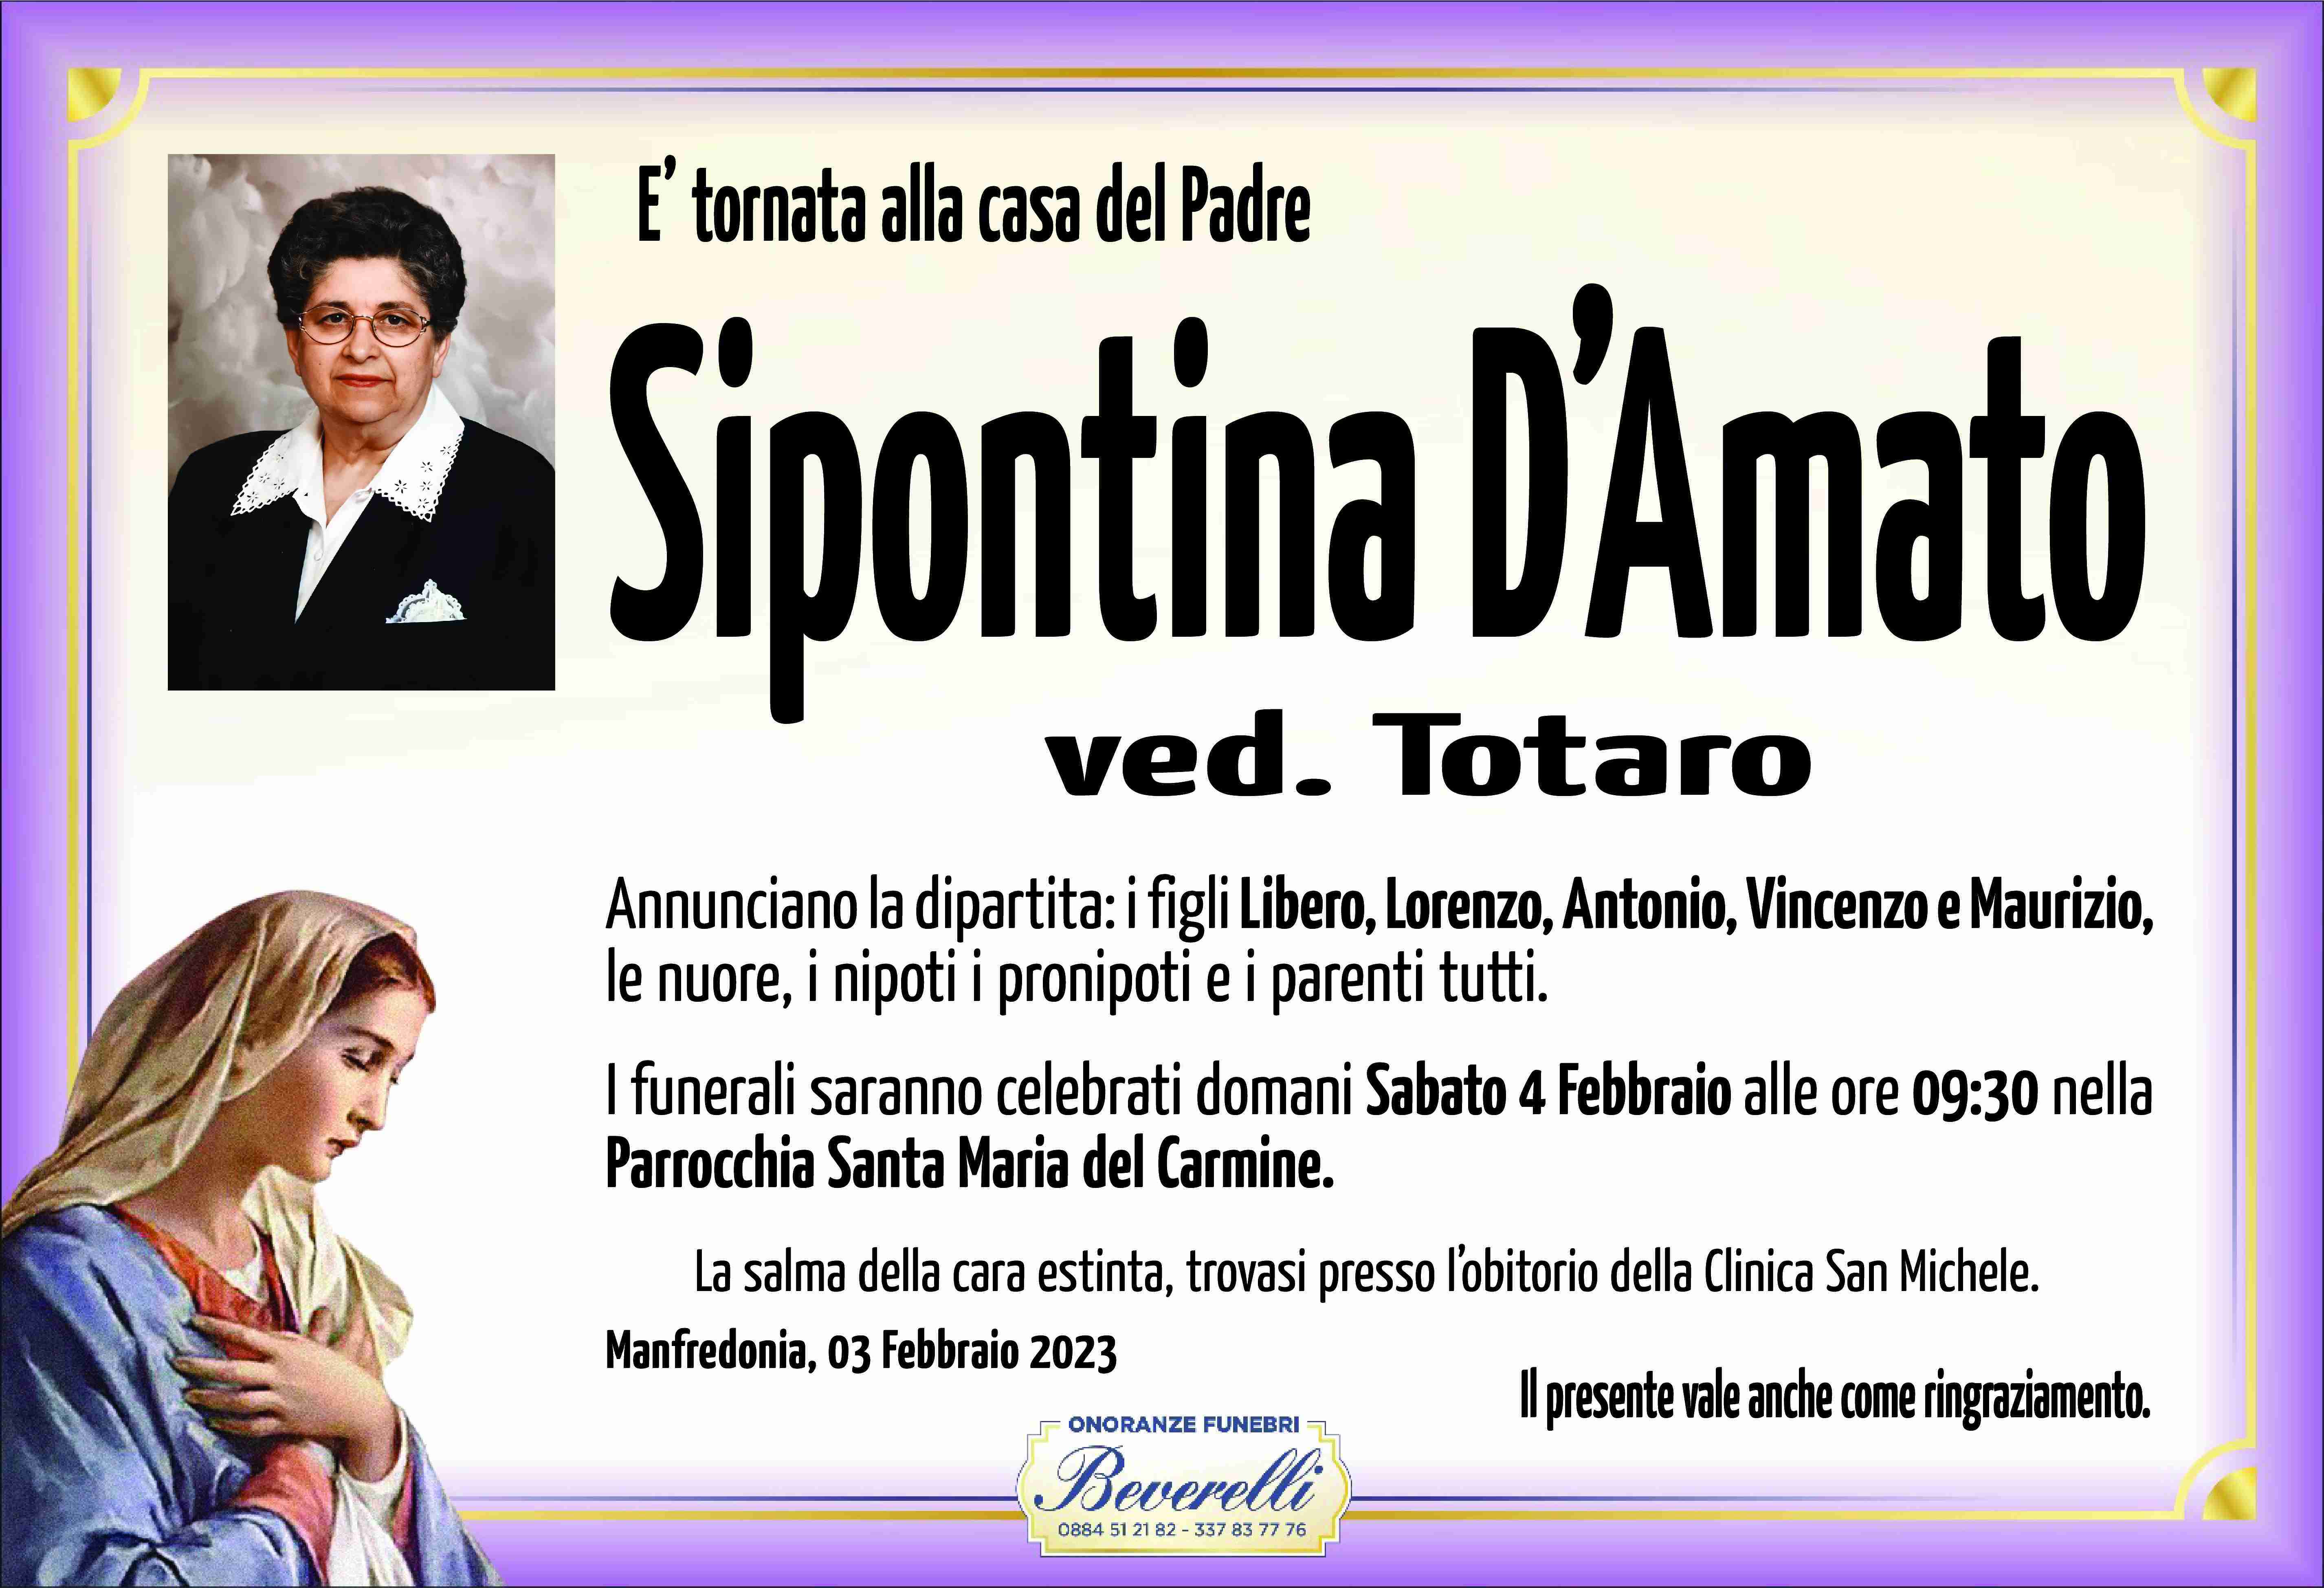 Sipontina D'Amato